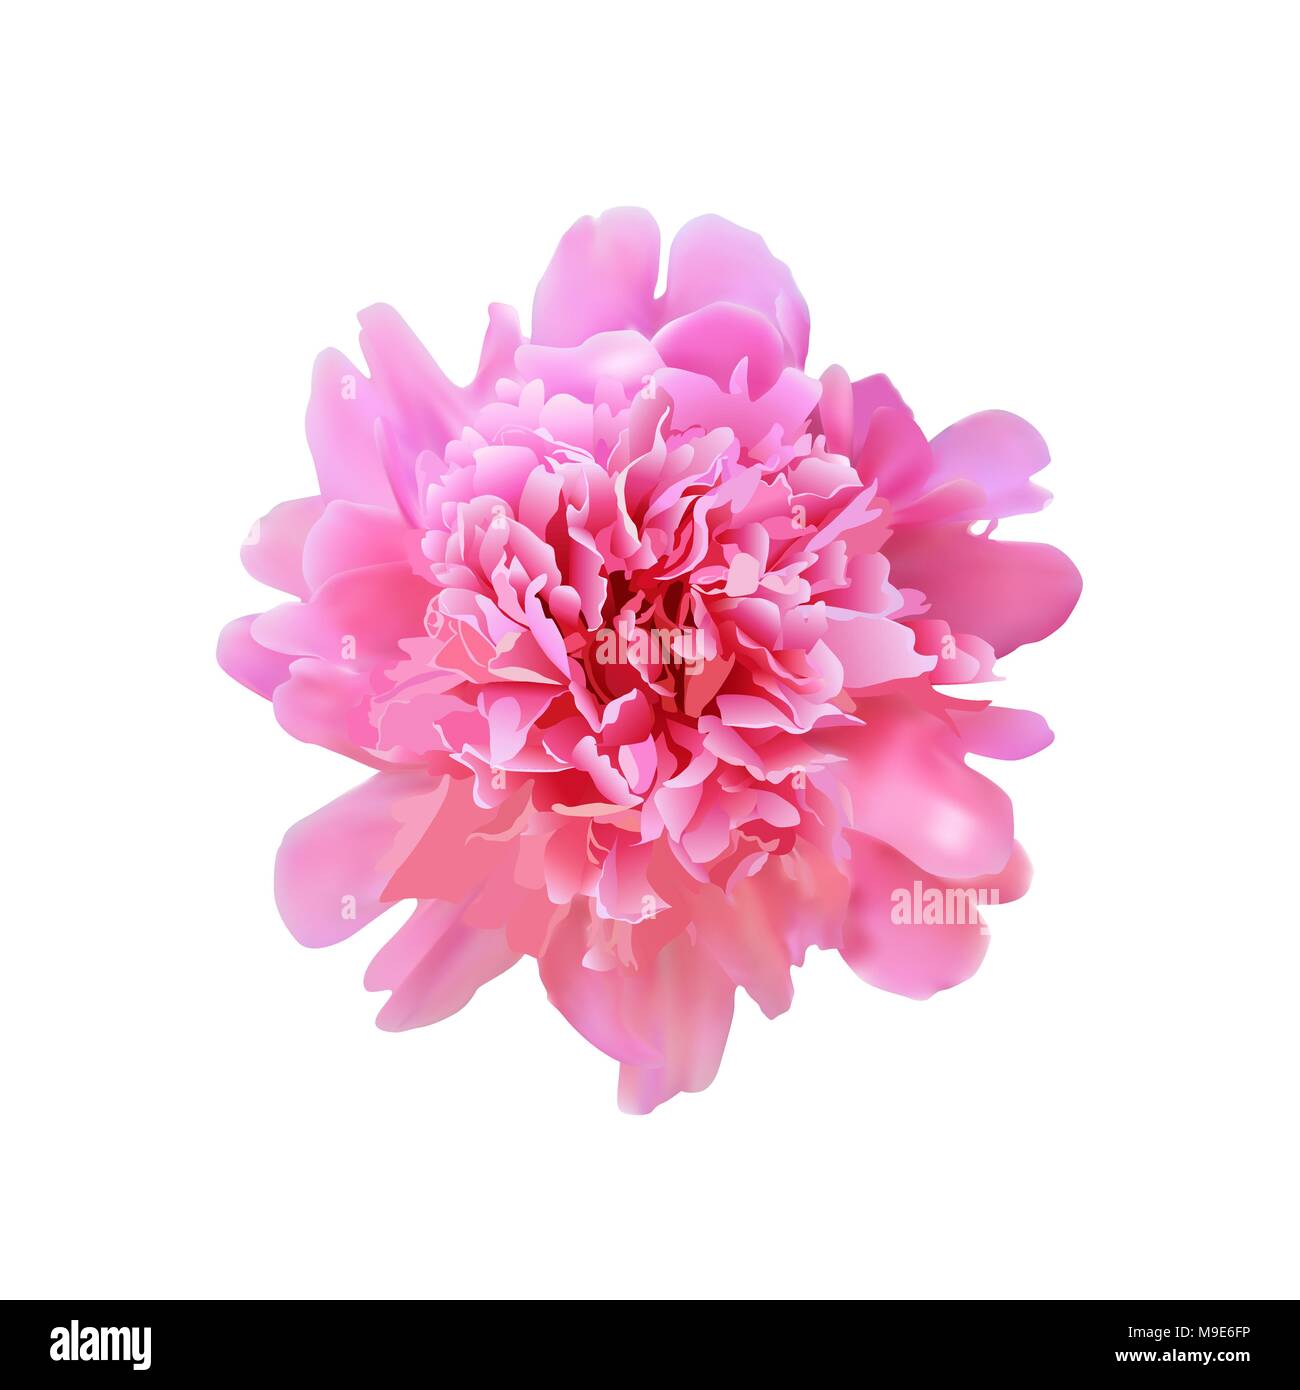 Grand réaliste vecteur plein épanouissement. pivoine rose belle fleur pour la conception Illustration de Vecteur